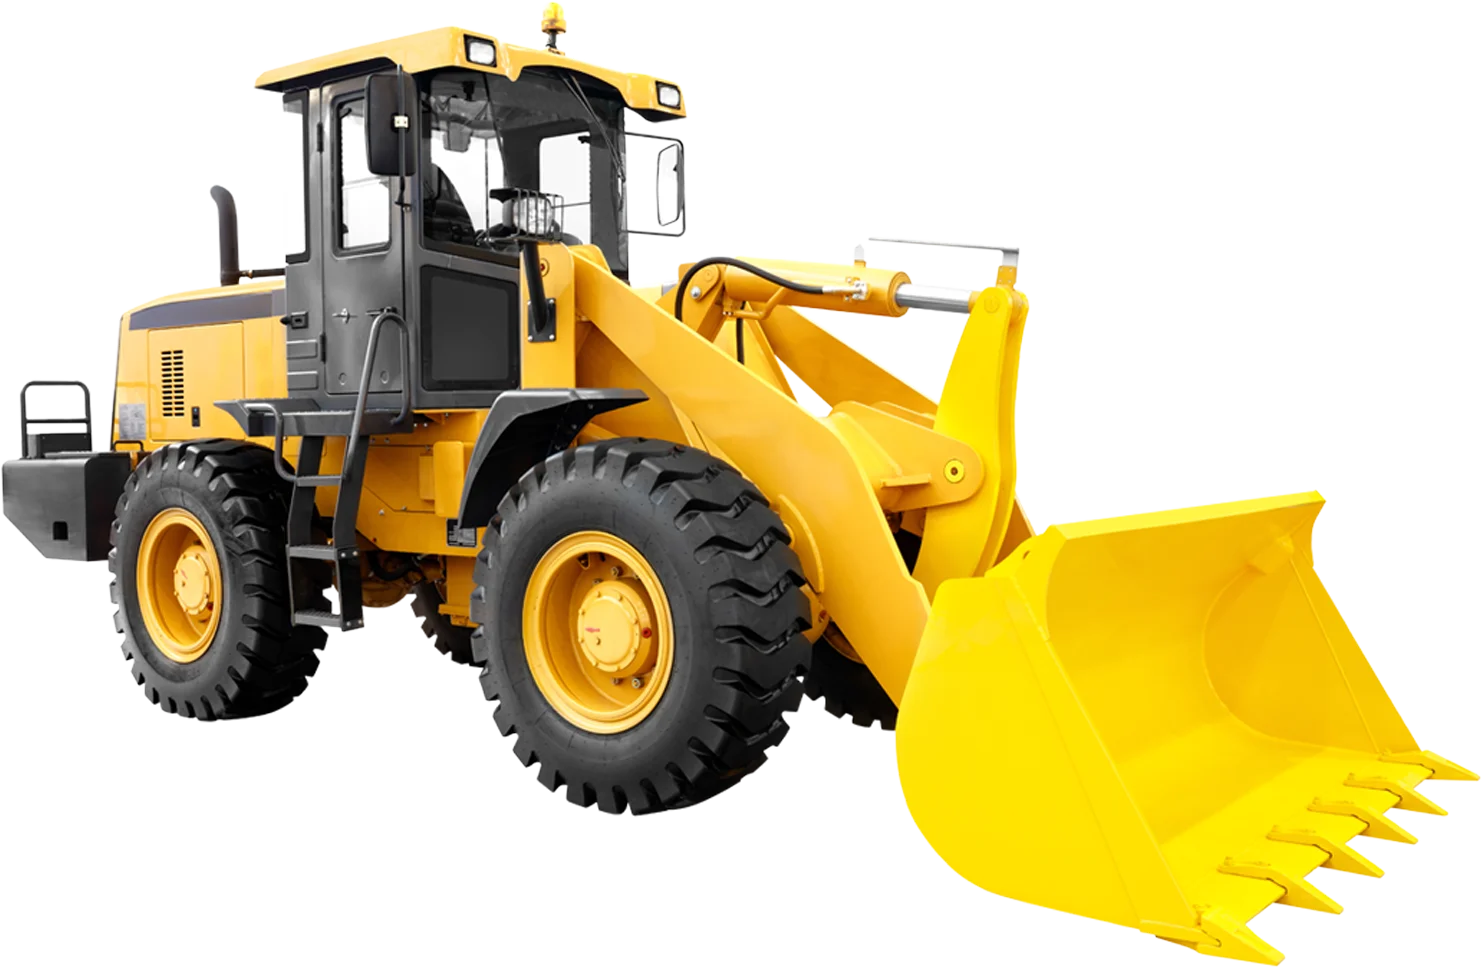 Maquina excavadora de color amarillo